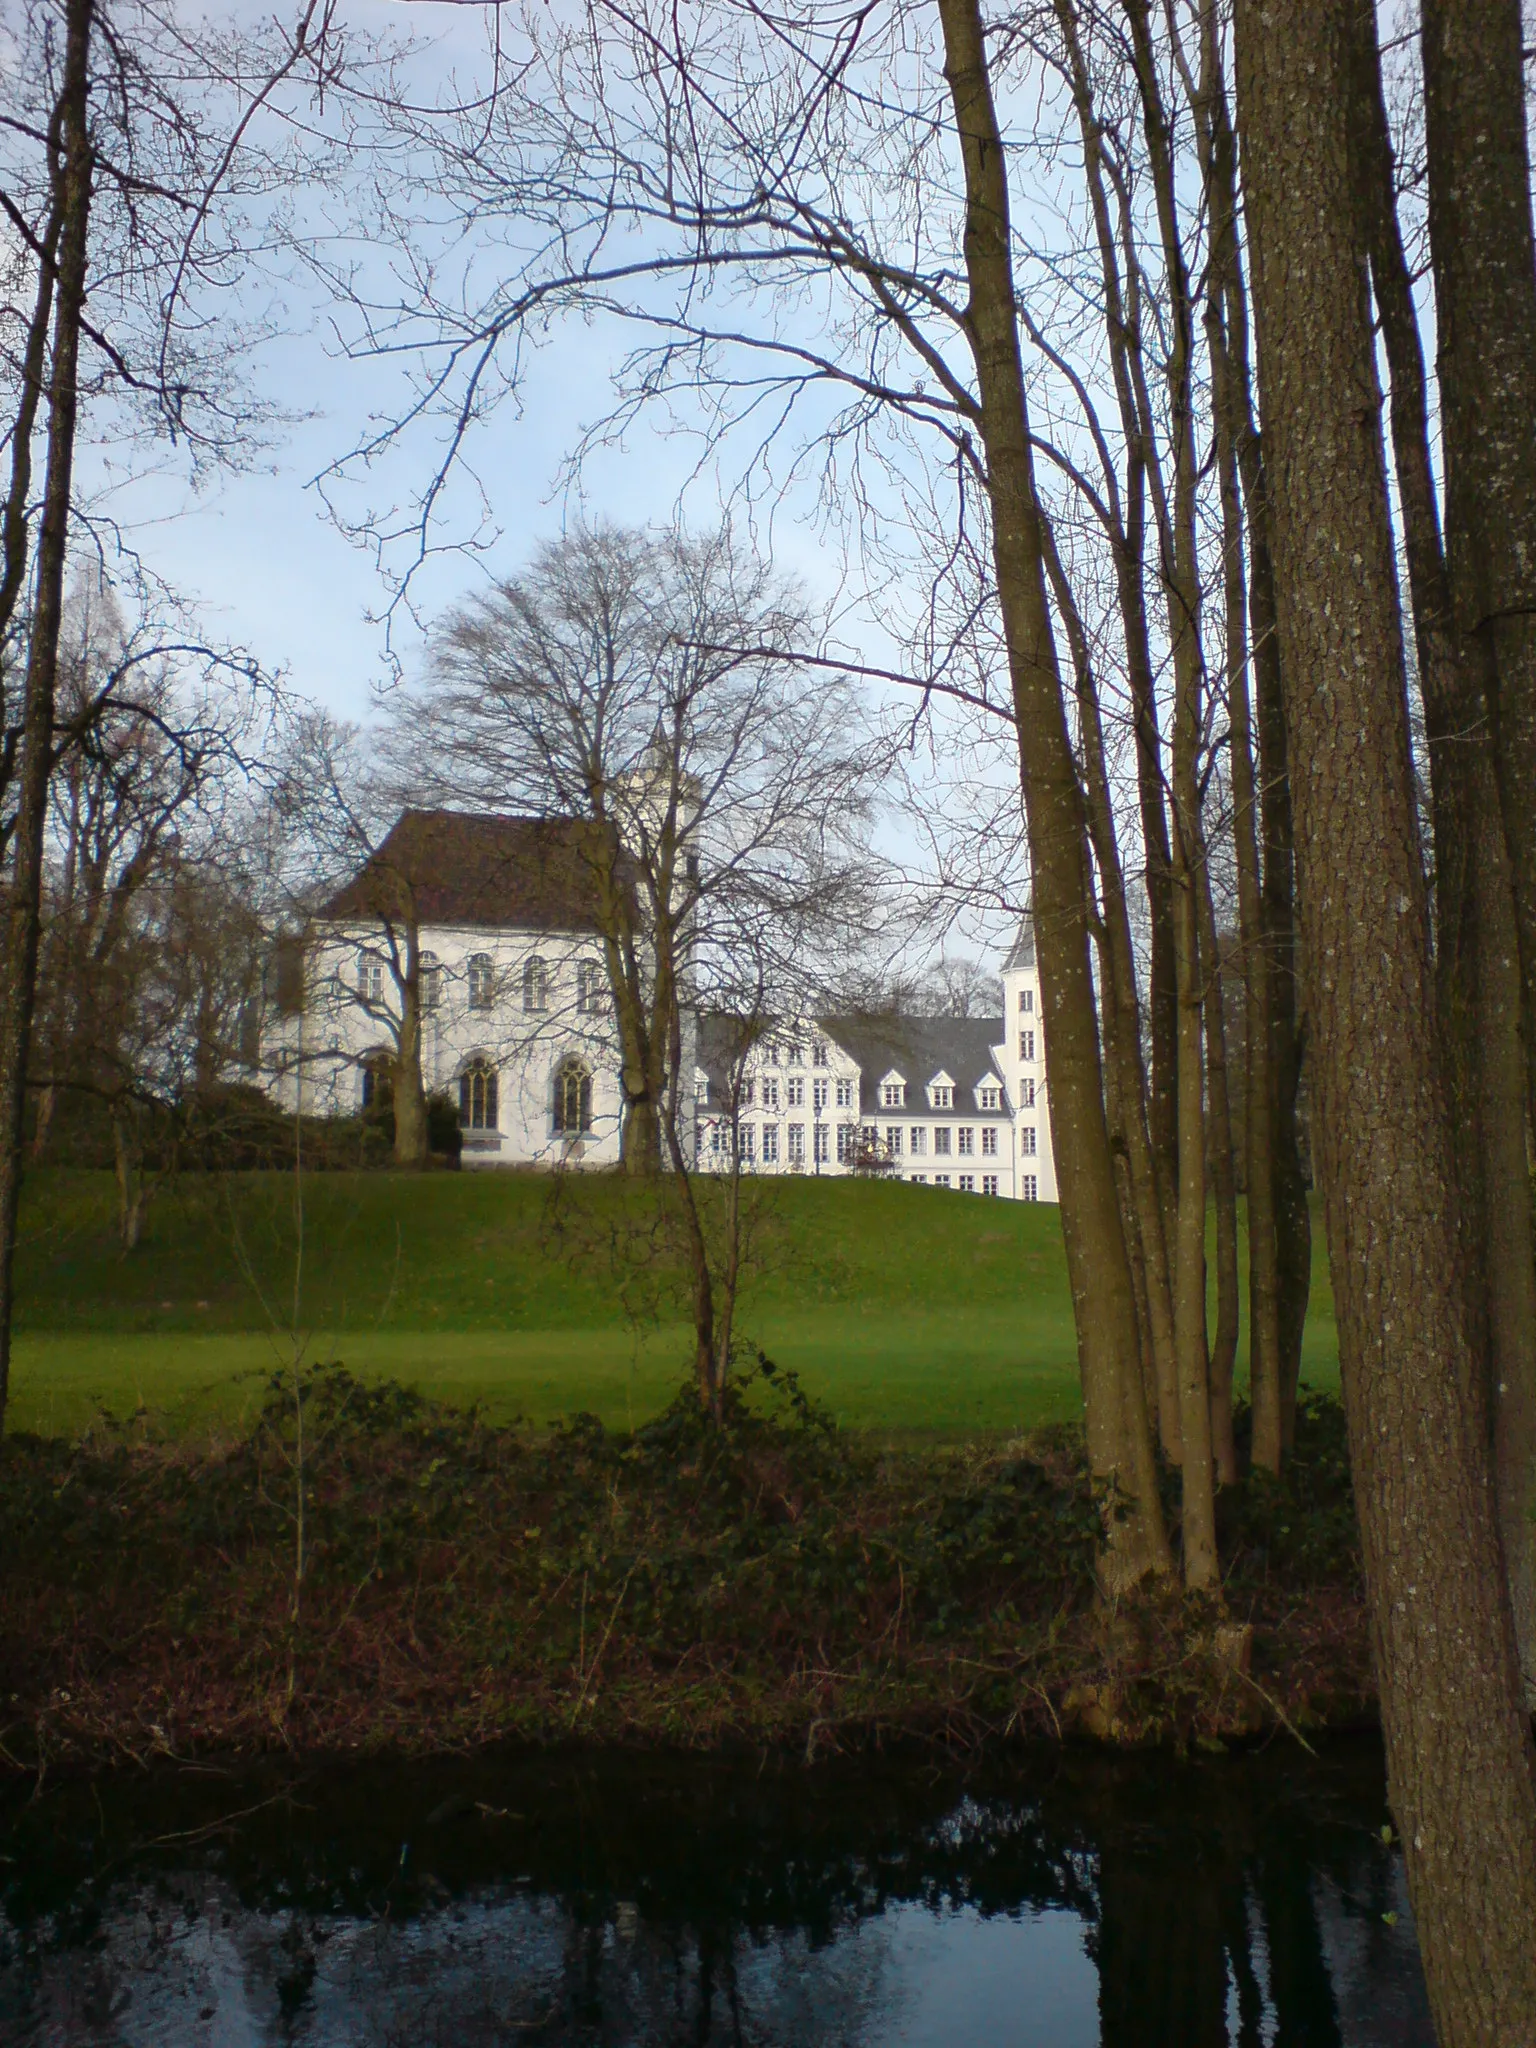 Photo showing: Description=Breitenburg_Garten_Kapelle

Source=myself
Date=03.2008
Author=PodracerHH